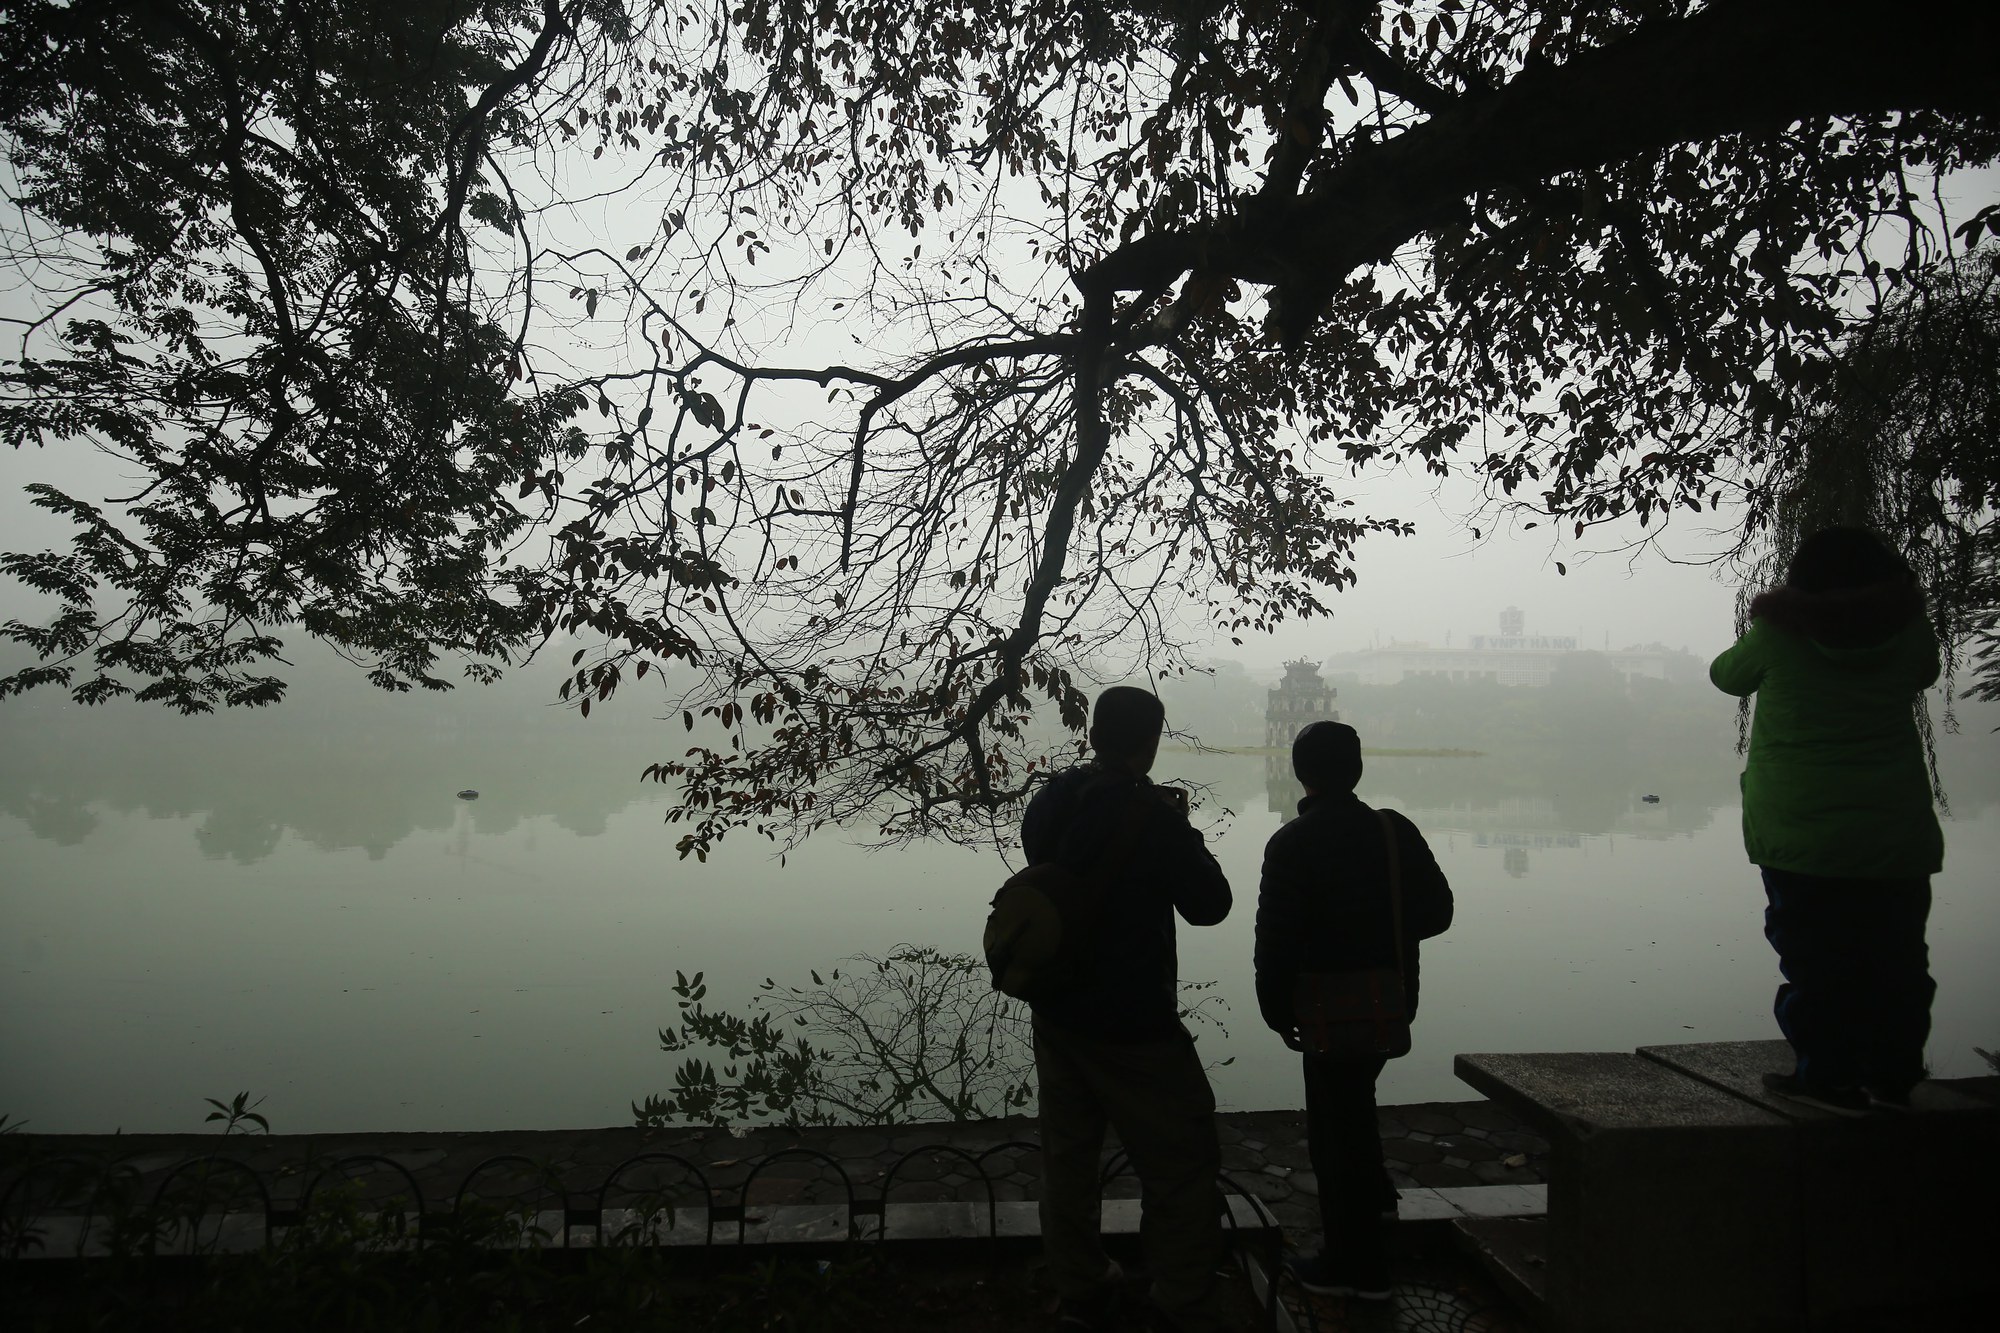 Hồ Gươm mờ ảo cổ kính, quyến rũ khi sương mù bao phủ - Ảnh 6.